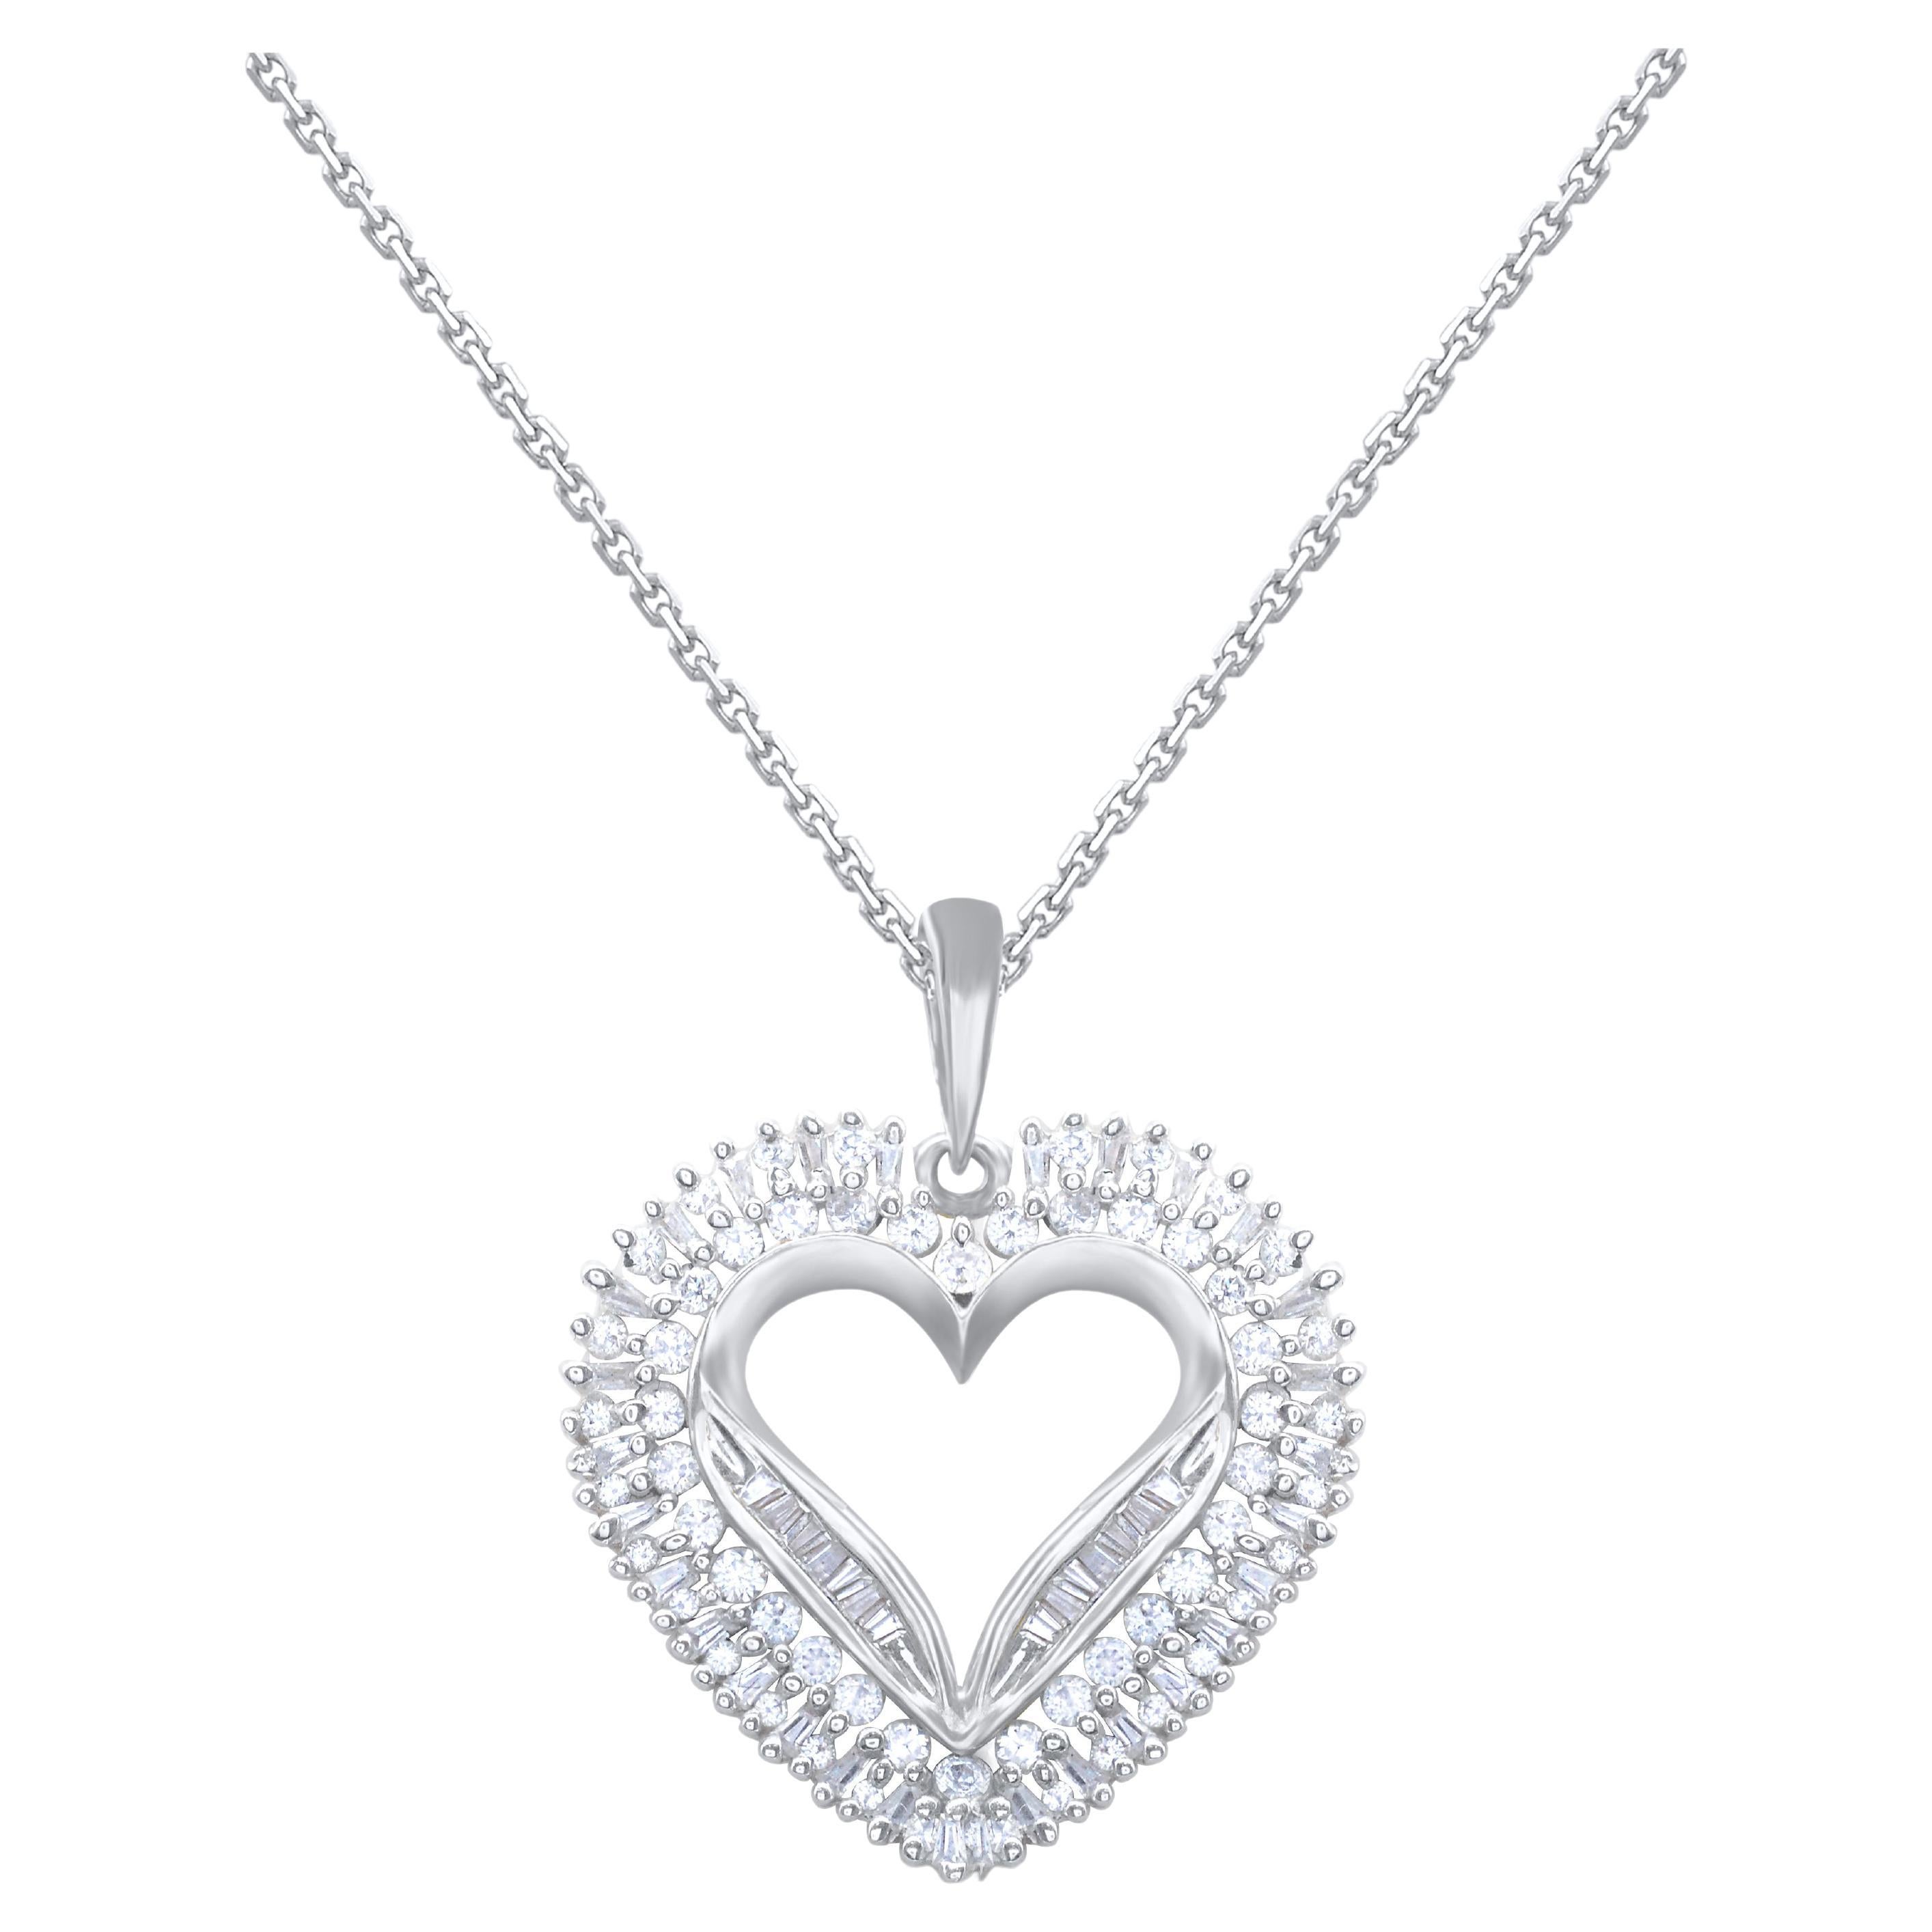 TJD Collier pendentif cœur en or blanc 14 carats avec diamants ronds et baguettes de 1,0 carat